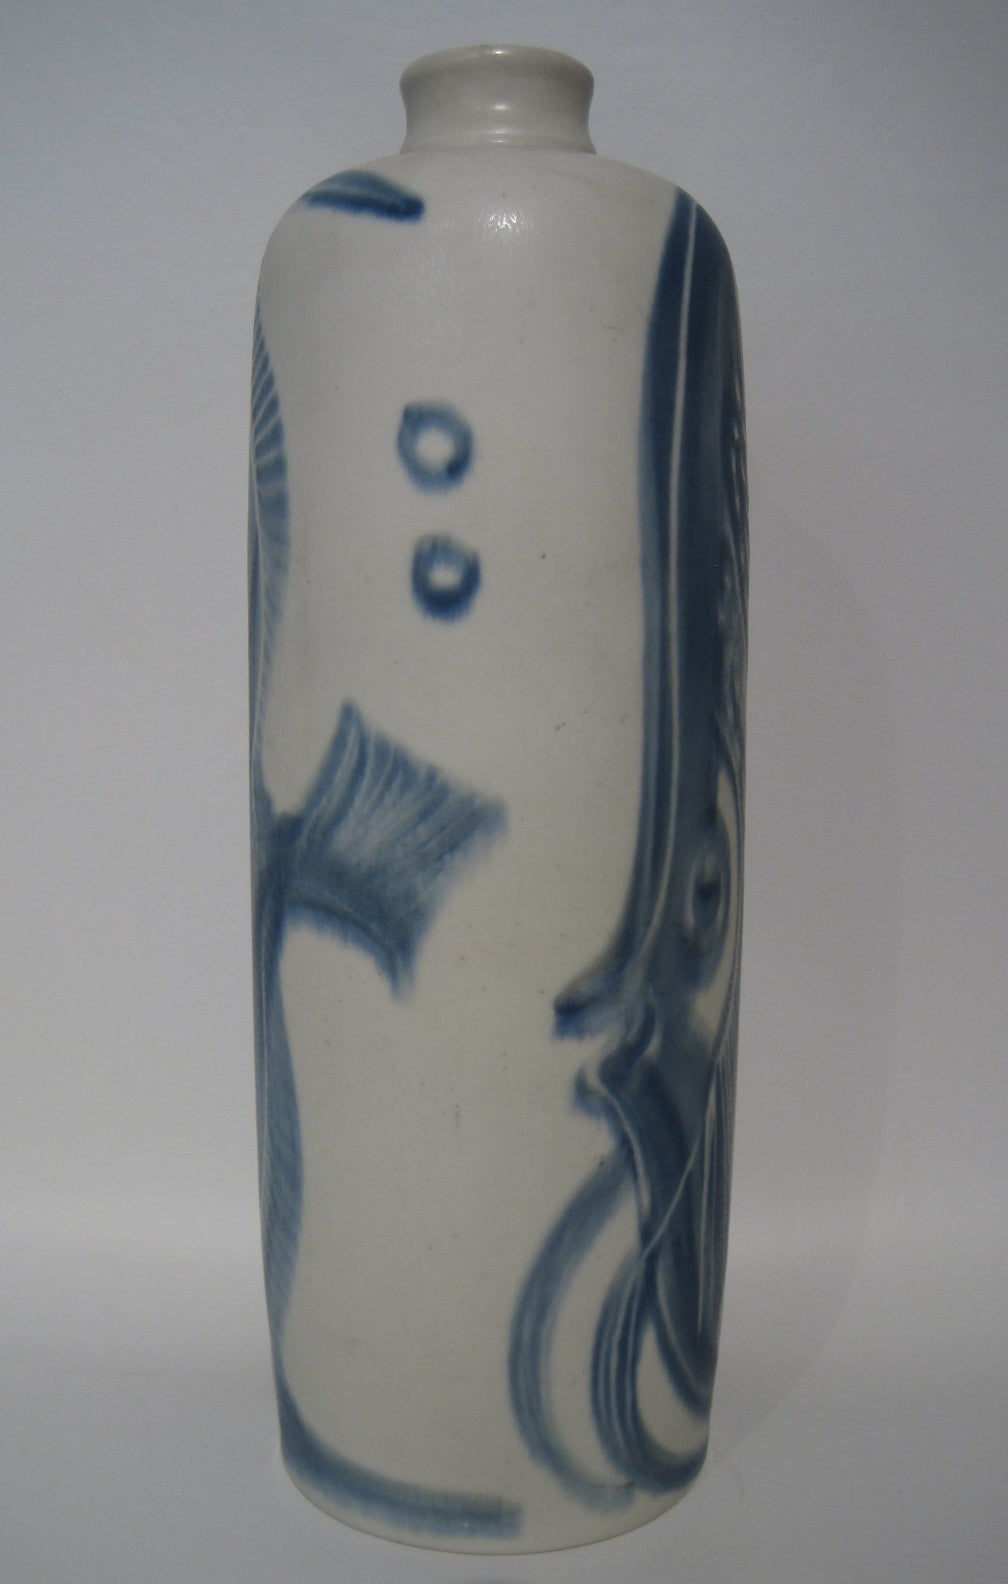 Seltene Vase aus glasiertem Steingut von Carl Harry Stalhane für Rörstrand.

Kostenloser Versand innerhalb der Vereinigten Staaten und Kanada.